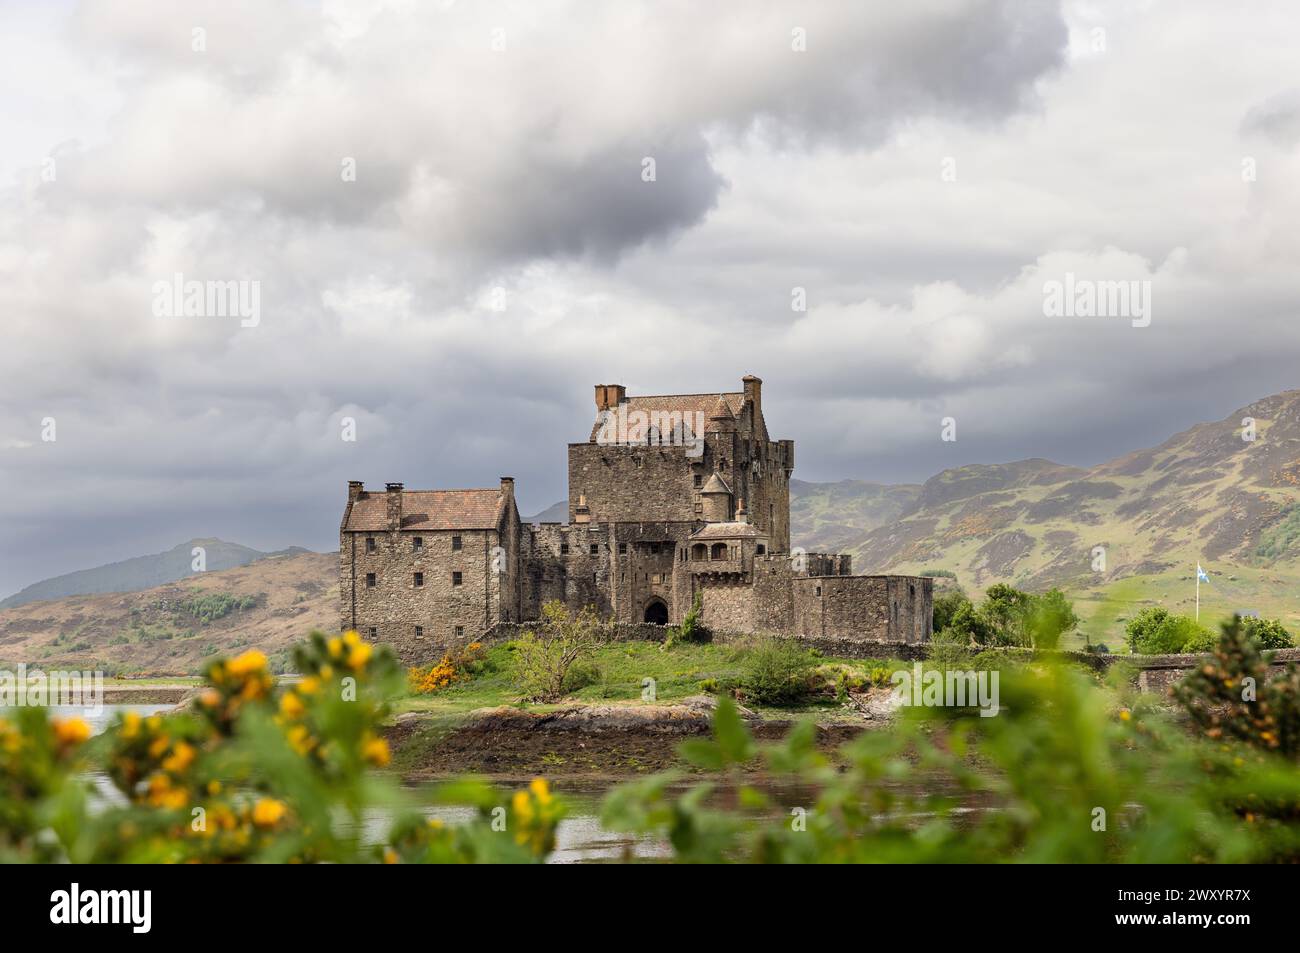 Il castello di Eilean Donan, simbolo della storia scozzese, è circondato da una flora vibrante e da un lago riflettente con gli altipiani che si innalzano dolcemente Foto Stock